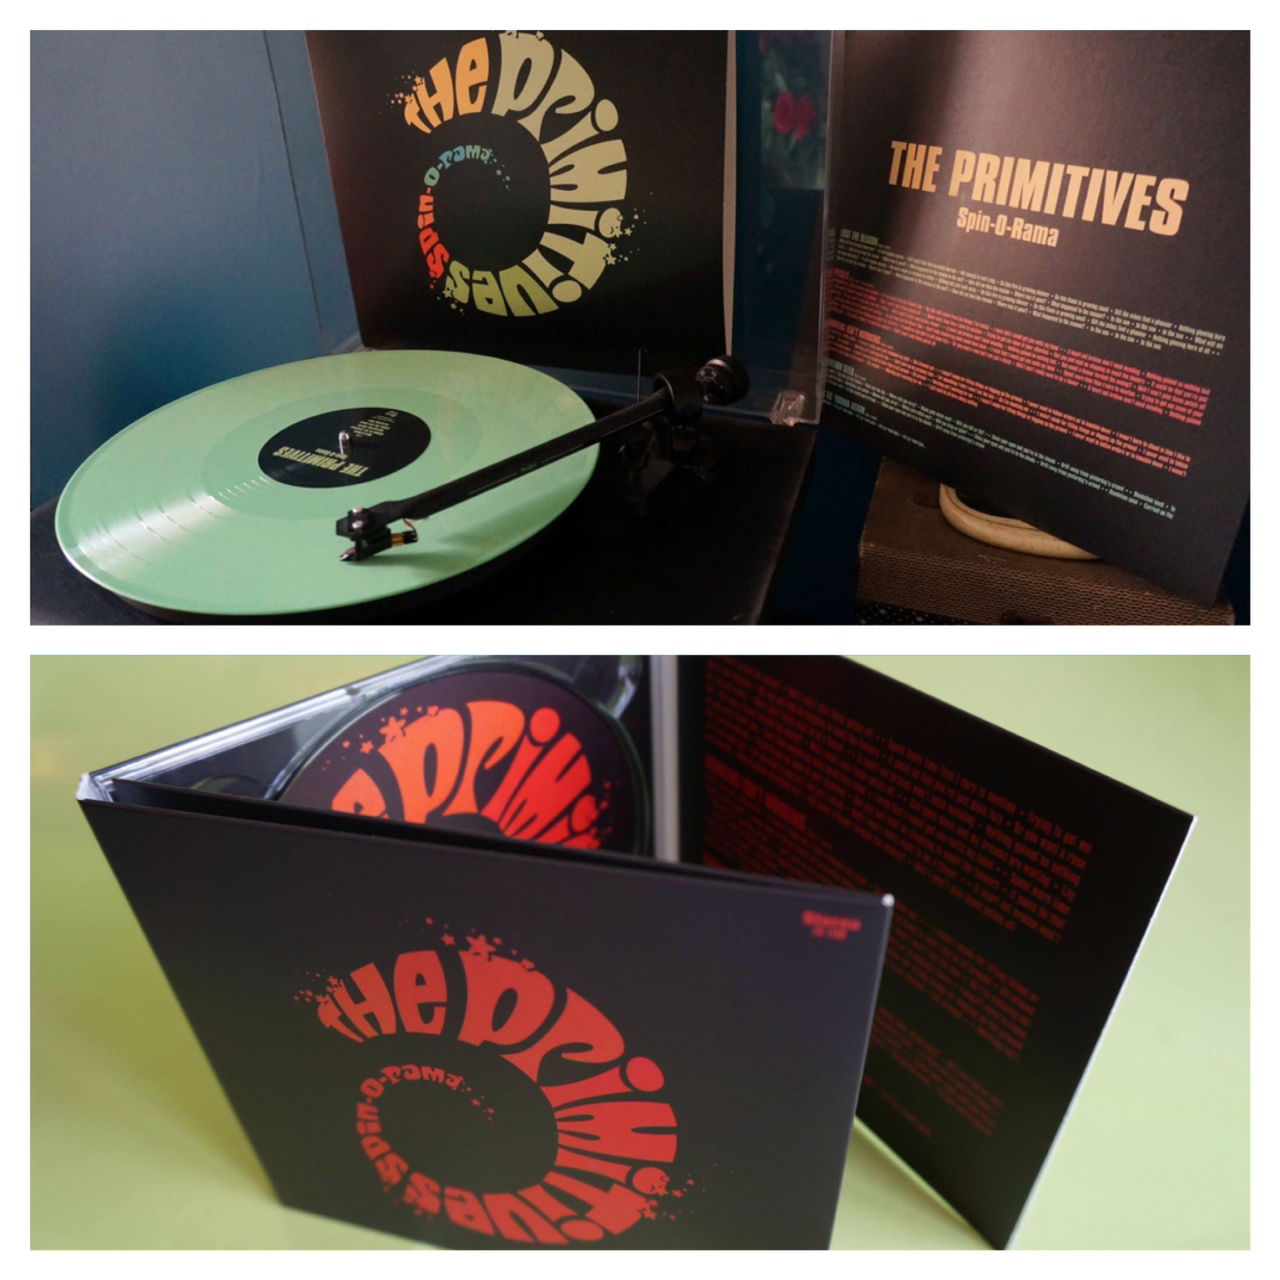 The Primitives "Spin-O-Rama" Album